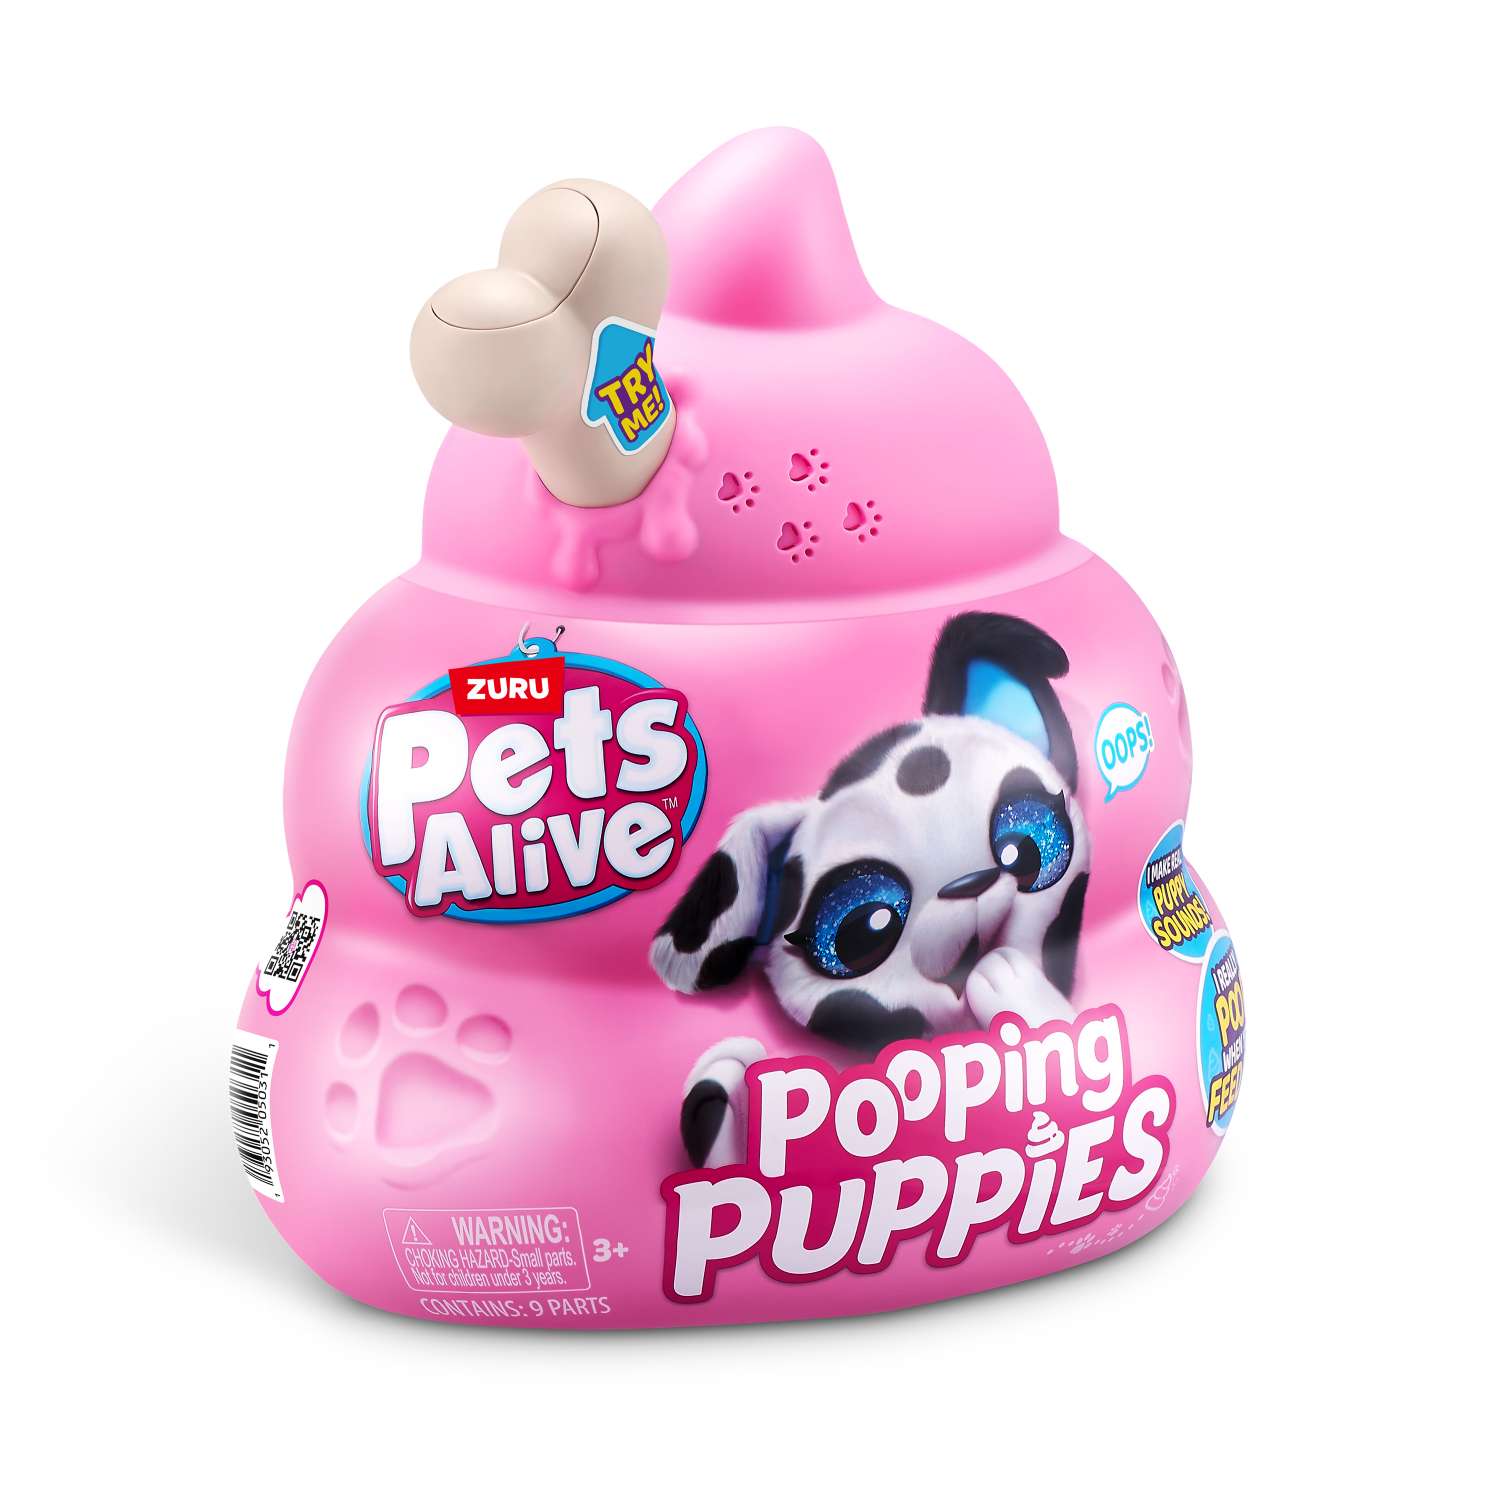 Игрушка Pets Alive Pooping Puppies Капсула в непрозрачной упаковке (Сюрприз) 9542 - фото 15